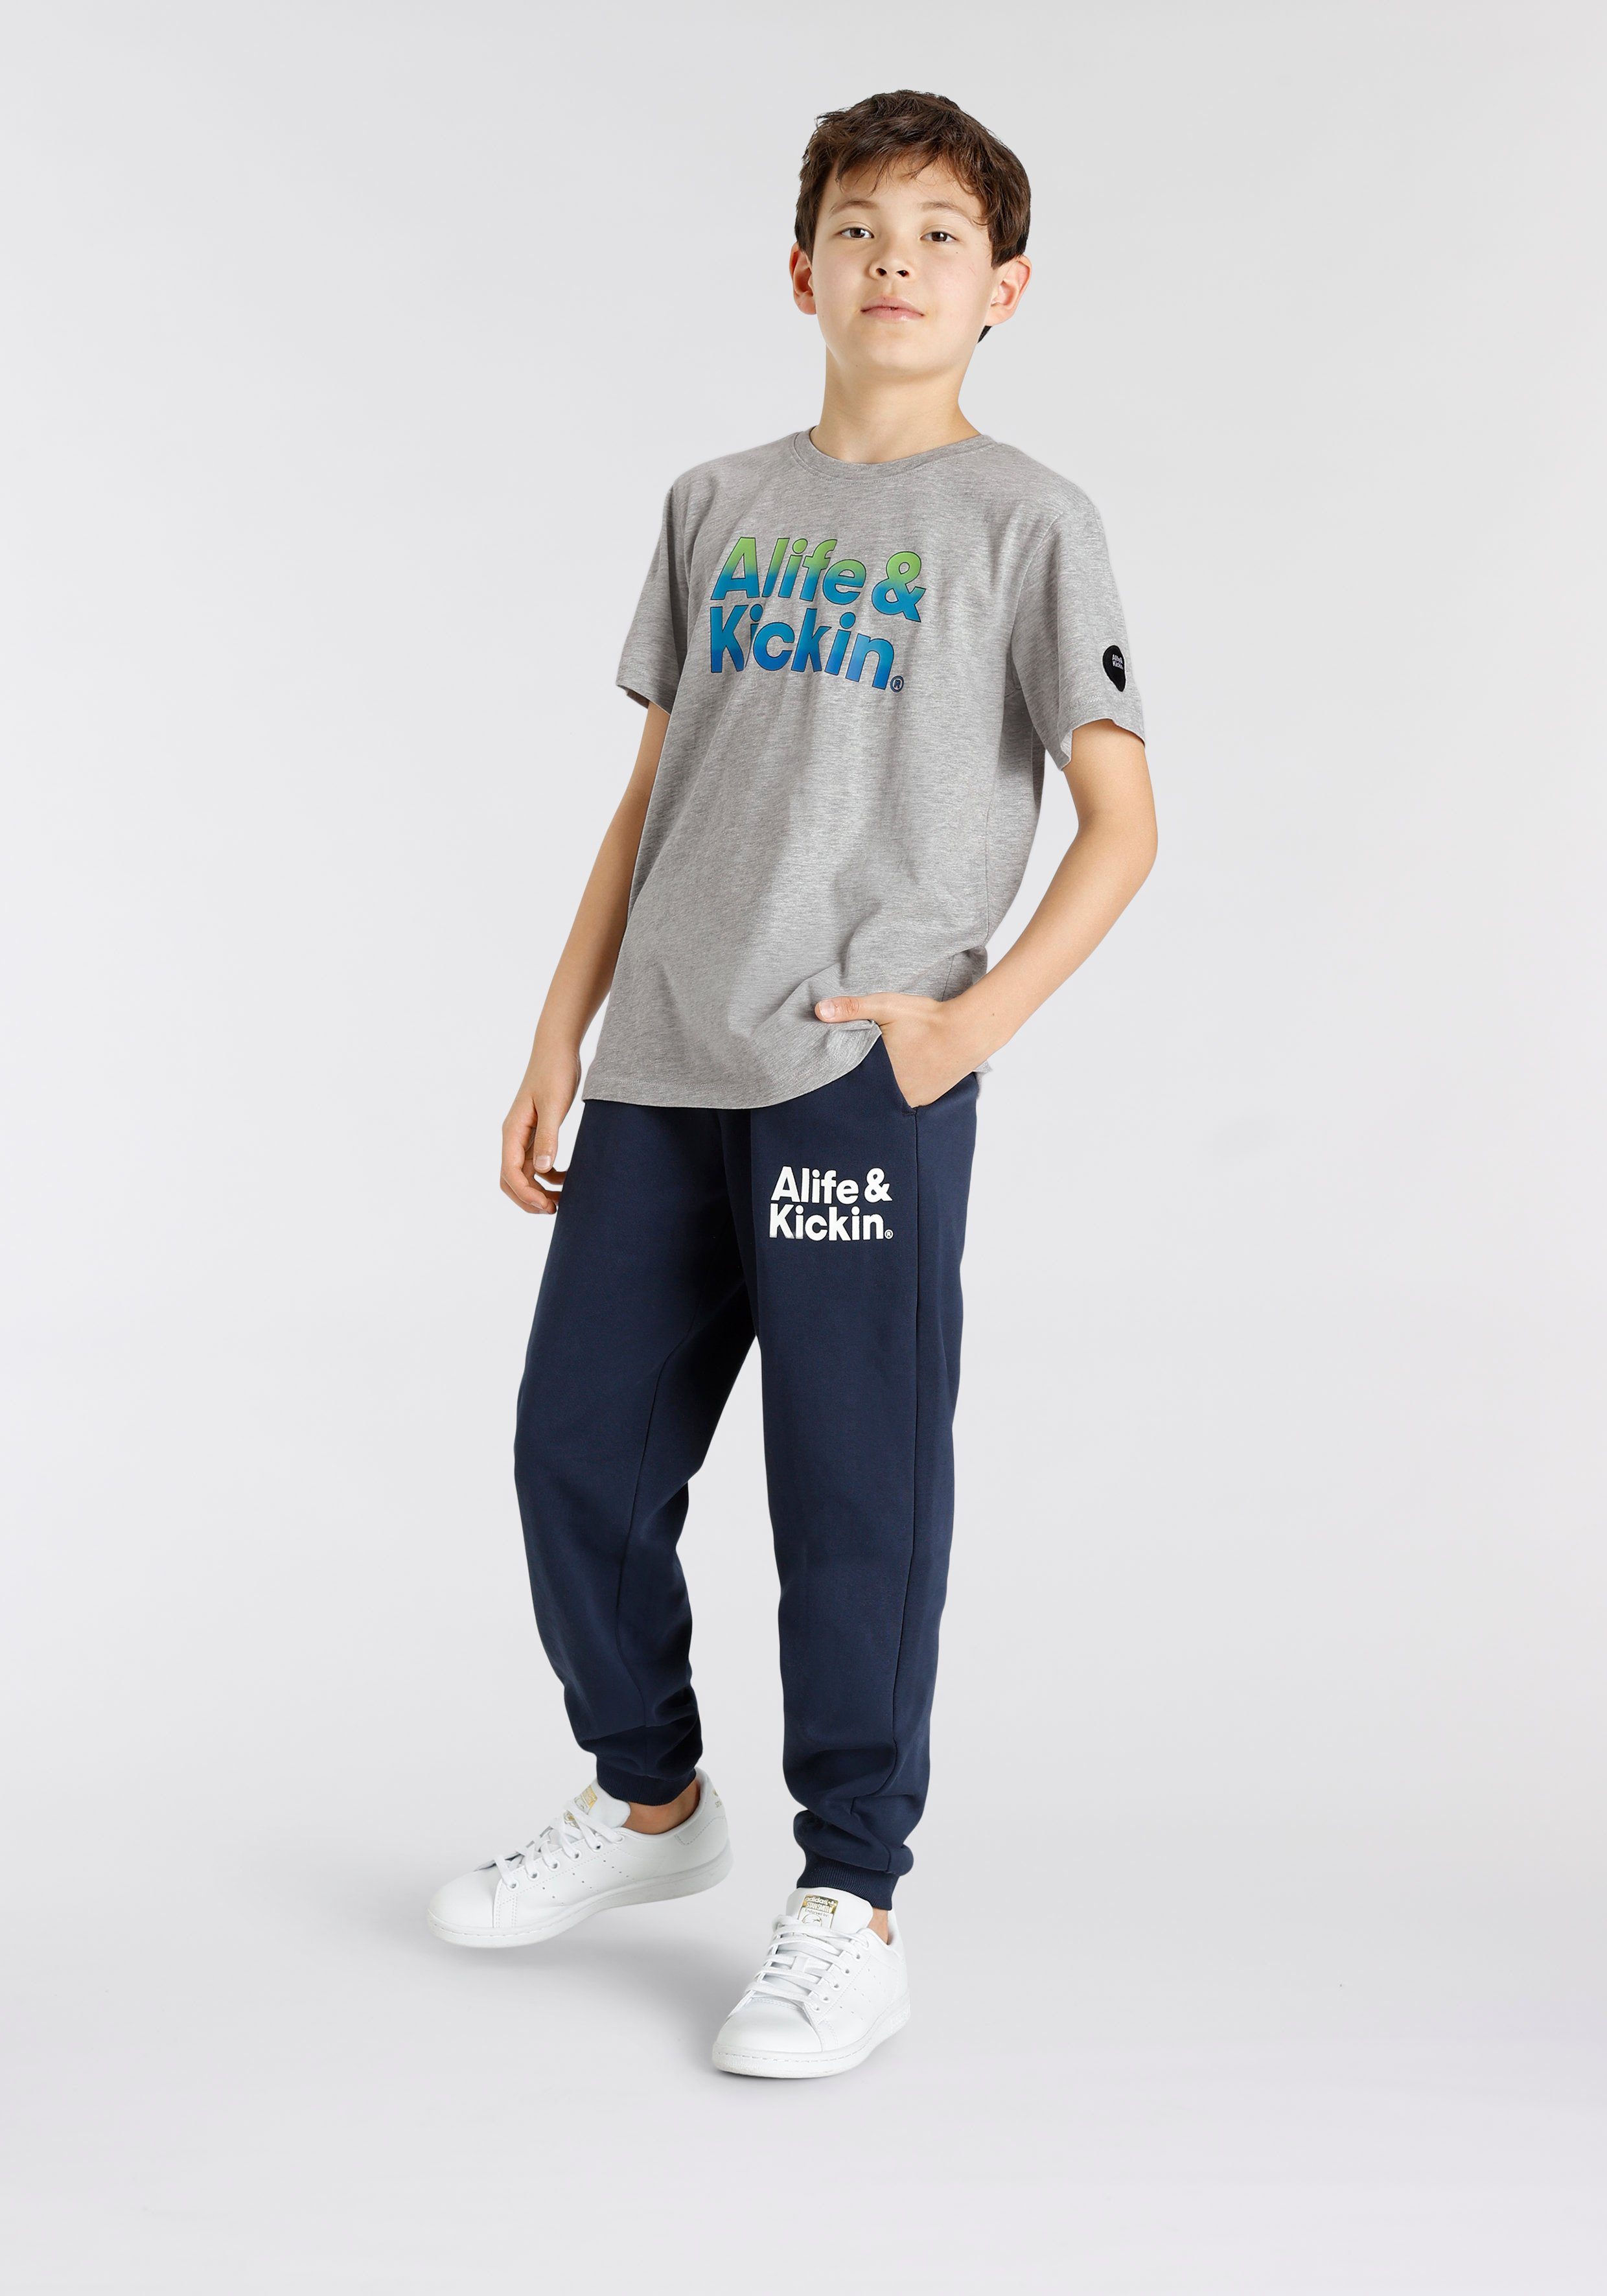 Alife & Logo-Print MARKE! melierter Alife&Kickin Qualität, für T-Shirt Kids in Kickin NEUE